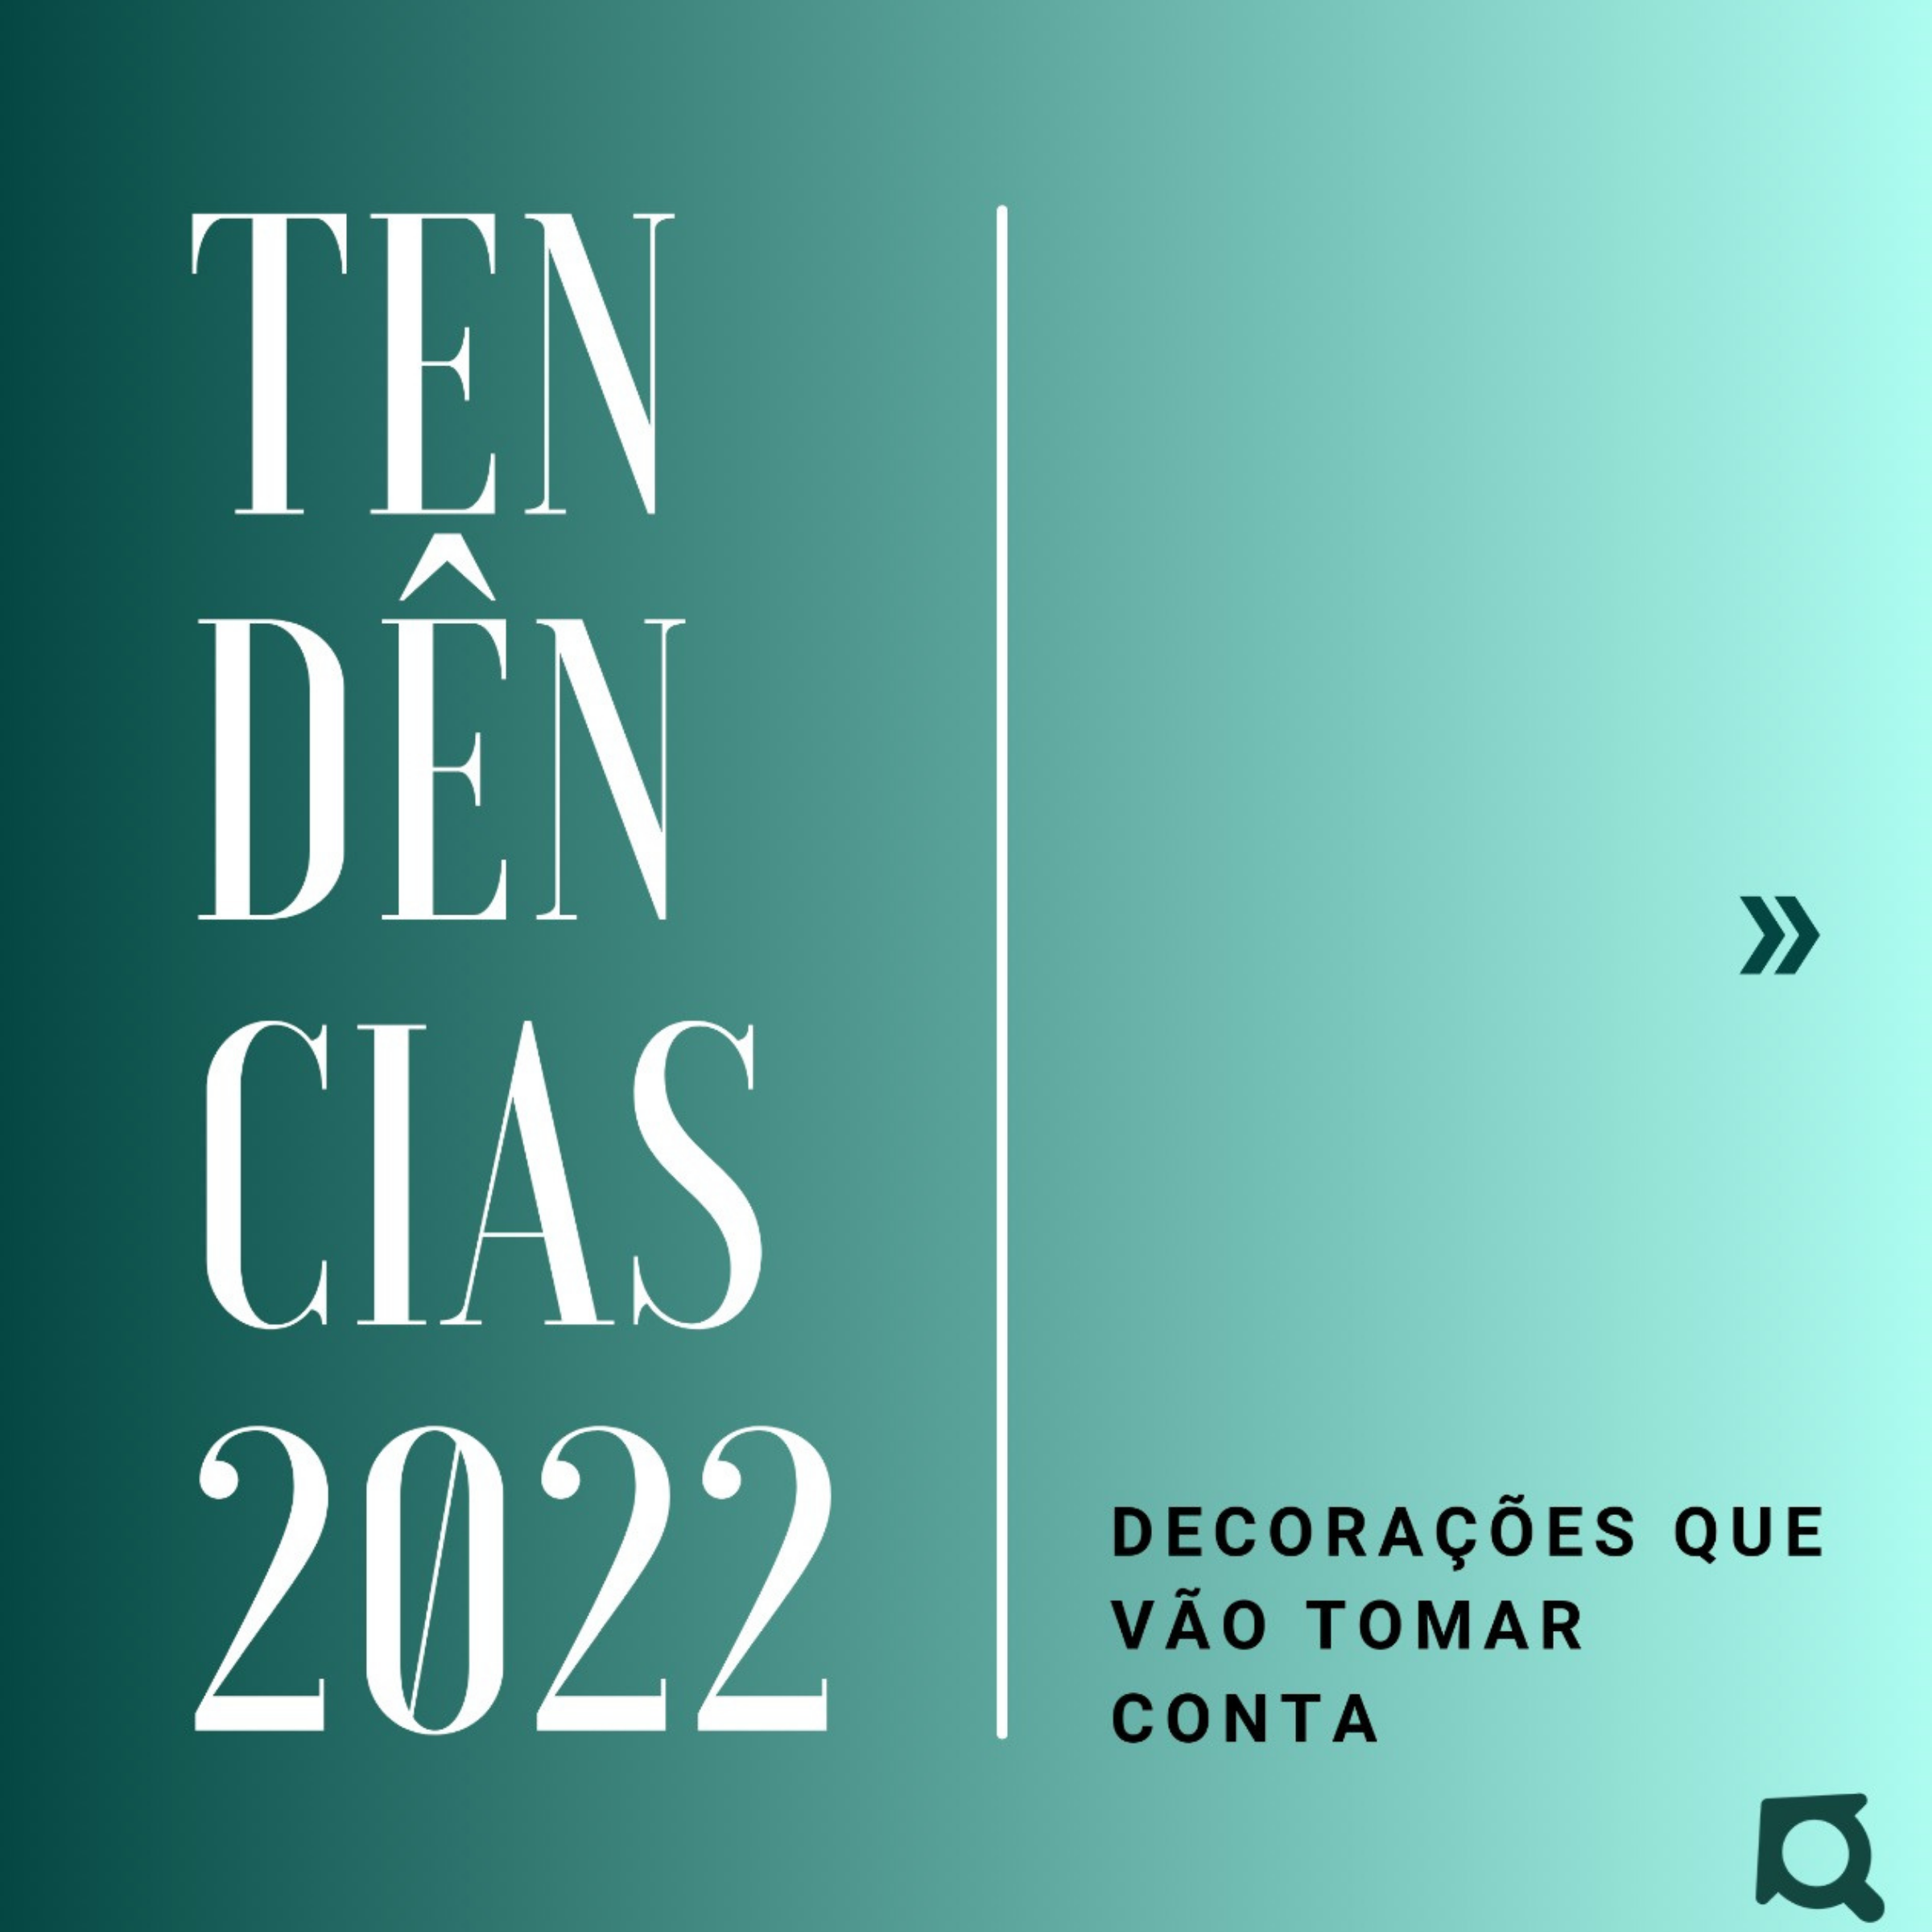 TENDÊNCIAS PARA DECORAÇÃO EM 2022